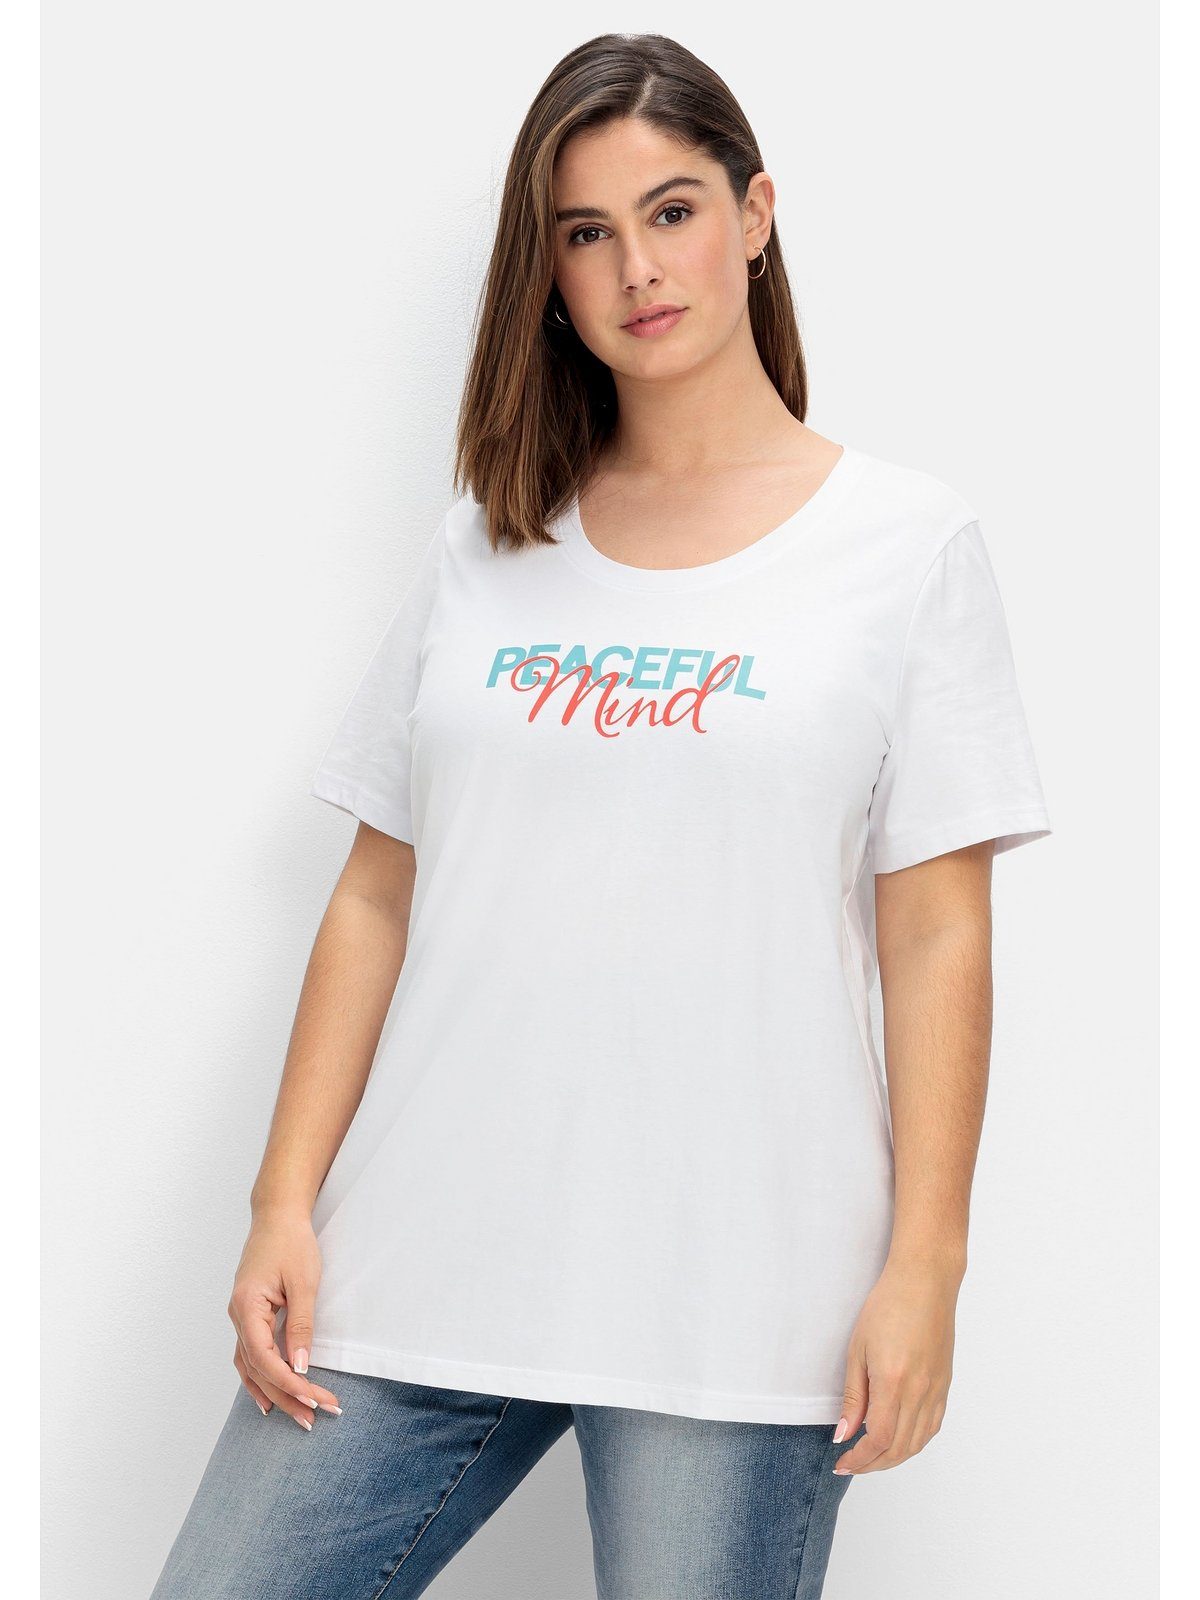 Sheego T-Shirt Große Größen mit Statement-Frontdruck weiß bedruckt | T-Shirts